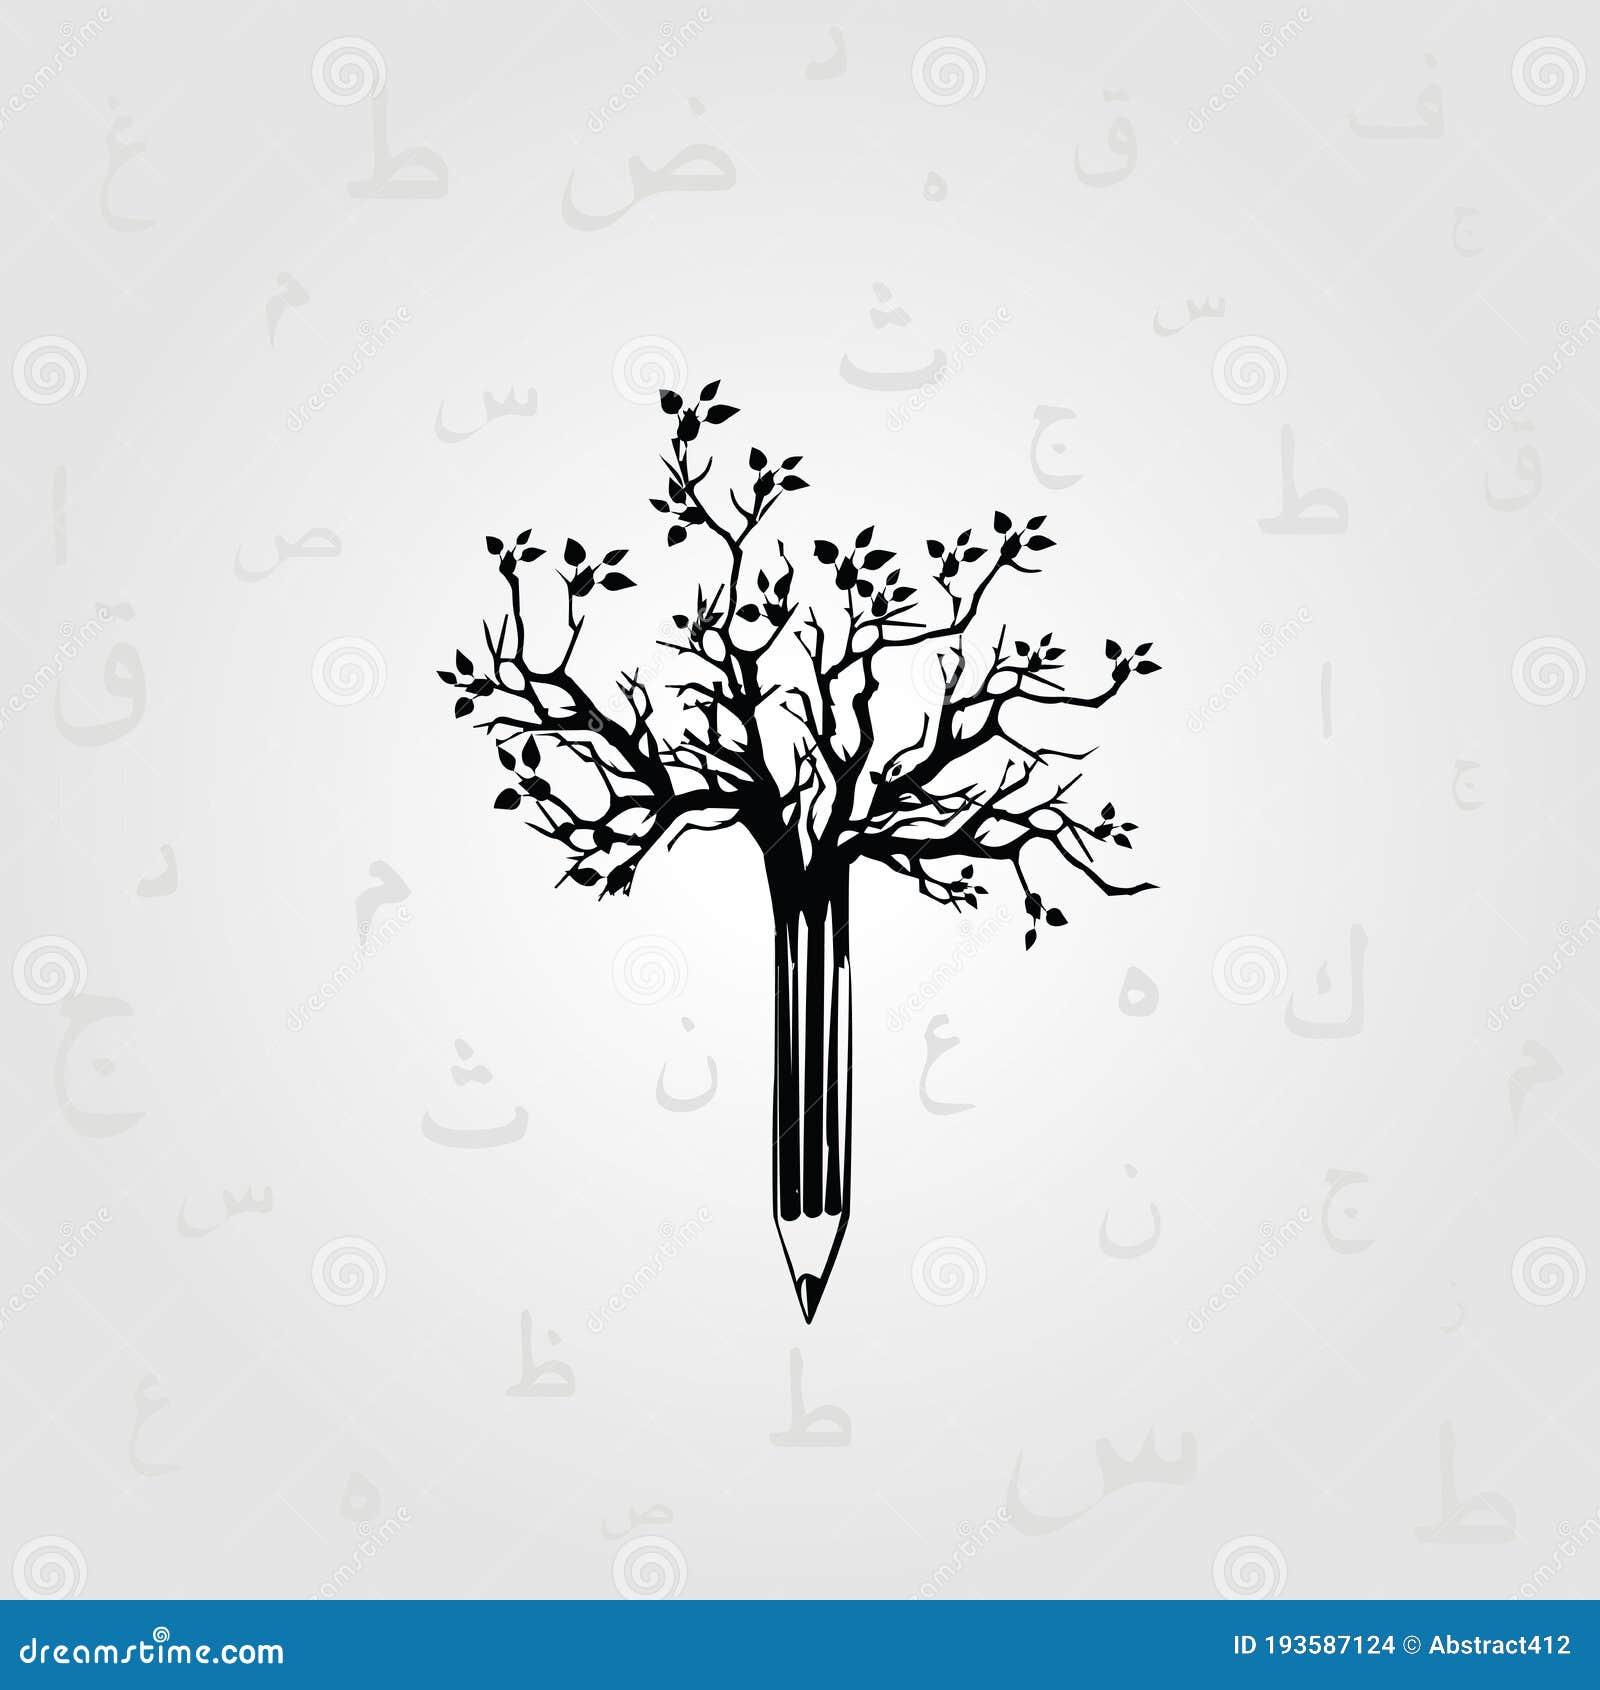 storyteller clipart black and white tree